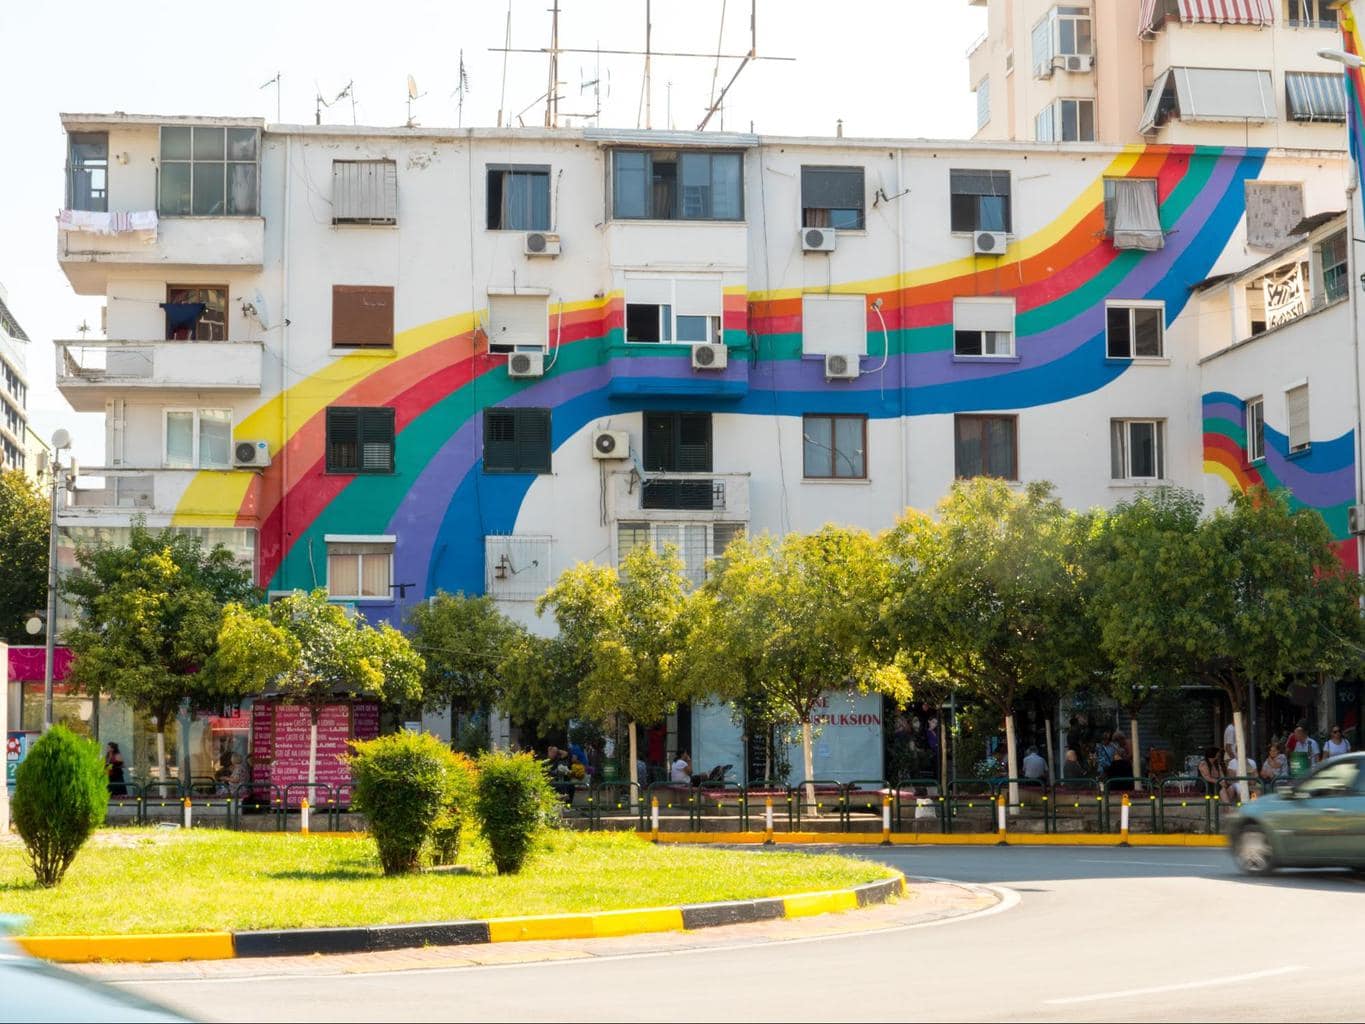 Tirana’s rainbow building